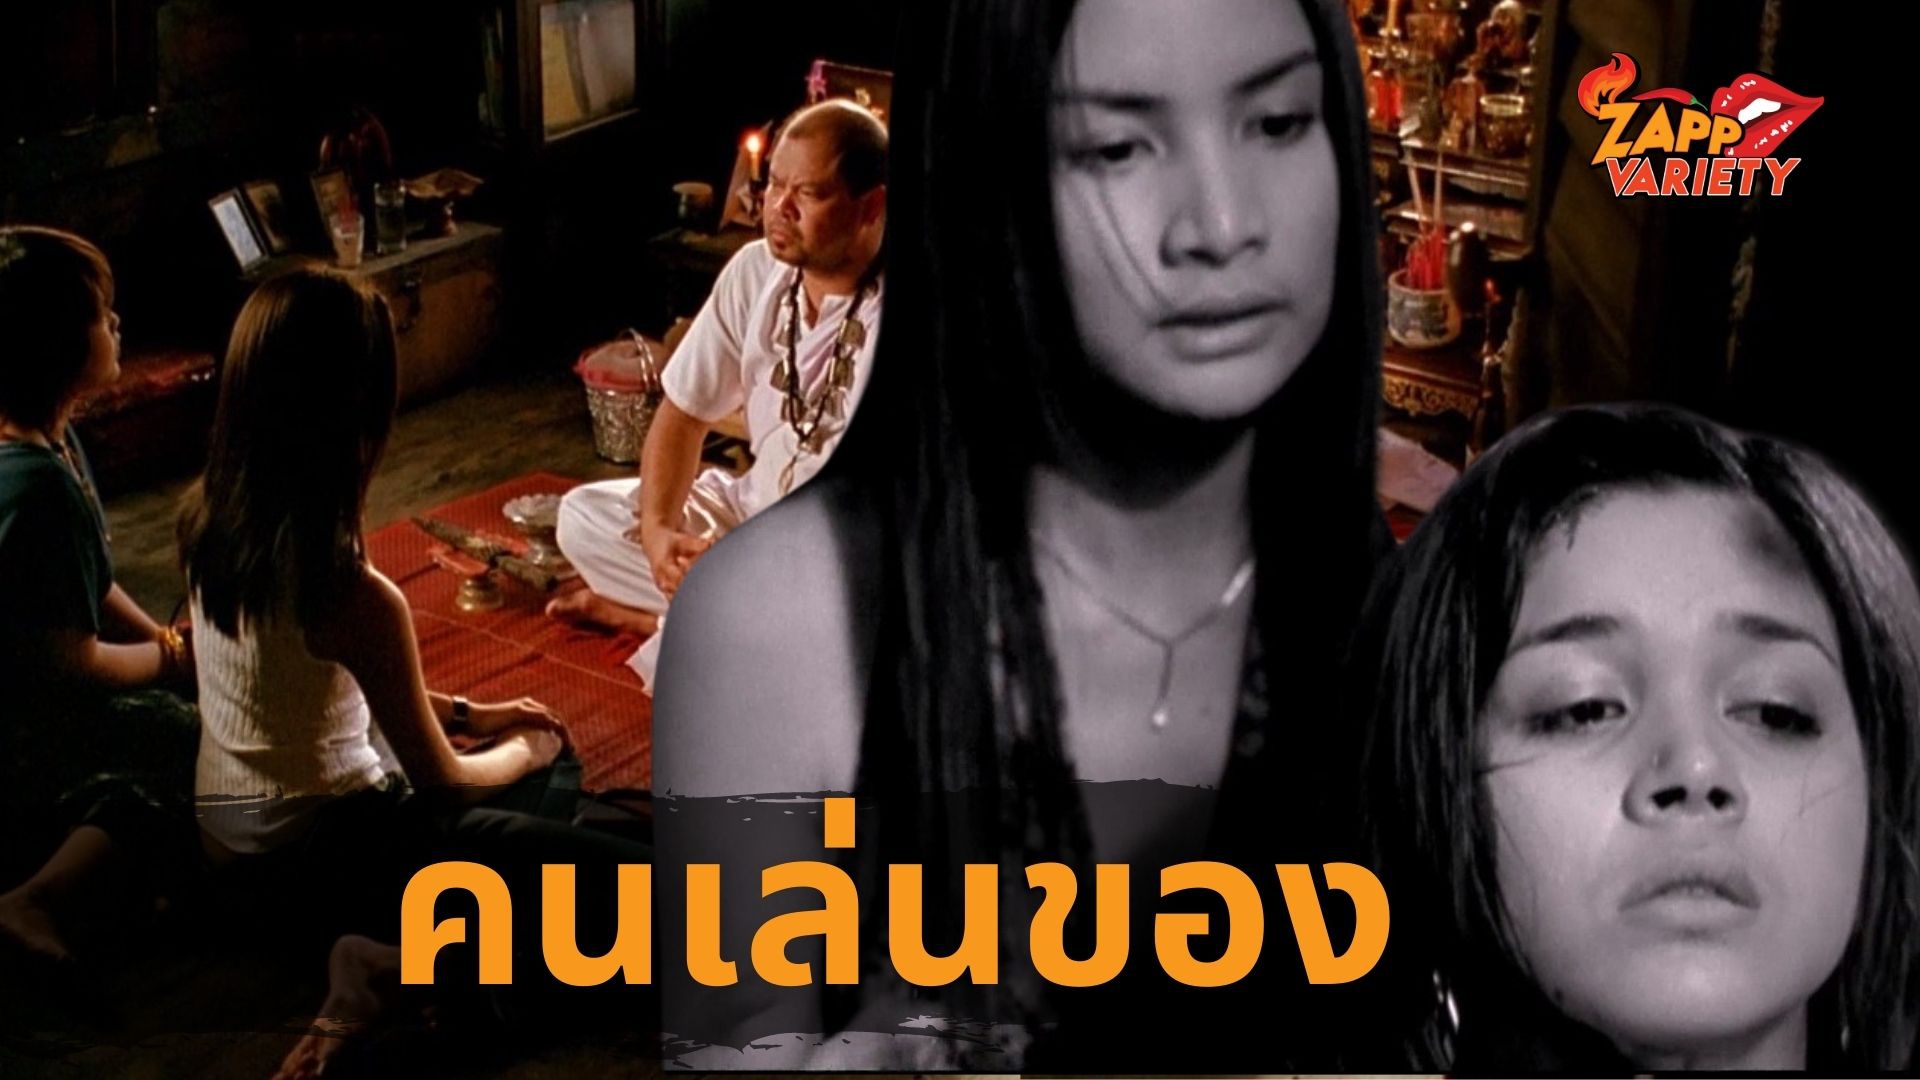 ทรูโฟร์ยู ช่อง 24 เตรียมฉายหนังไทยไสยศาสตร์ที่หลอนขนหัวลุกกับภาพยนตร์ “คนเล่นของ”